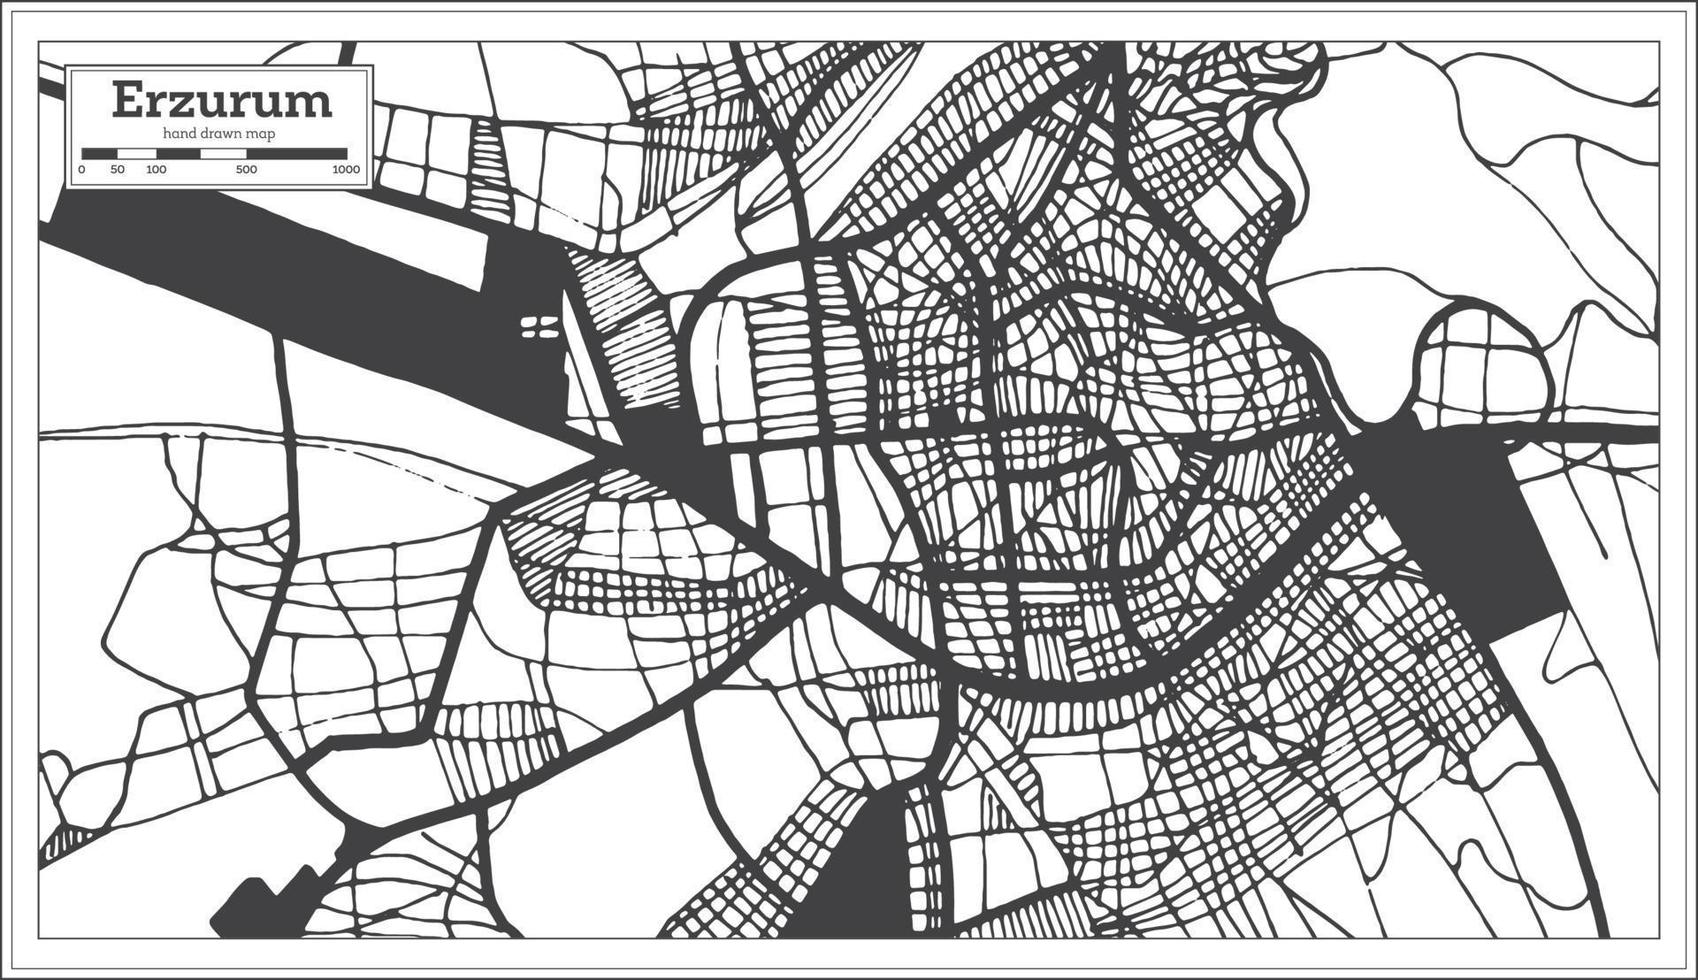 erzurum kalkoen stad kaart in zwart en wit kleur in retro stijl. schets kaart. vector